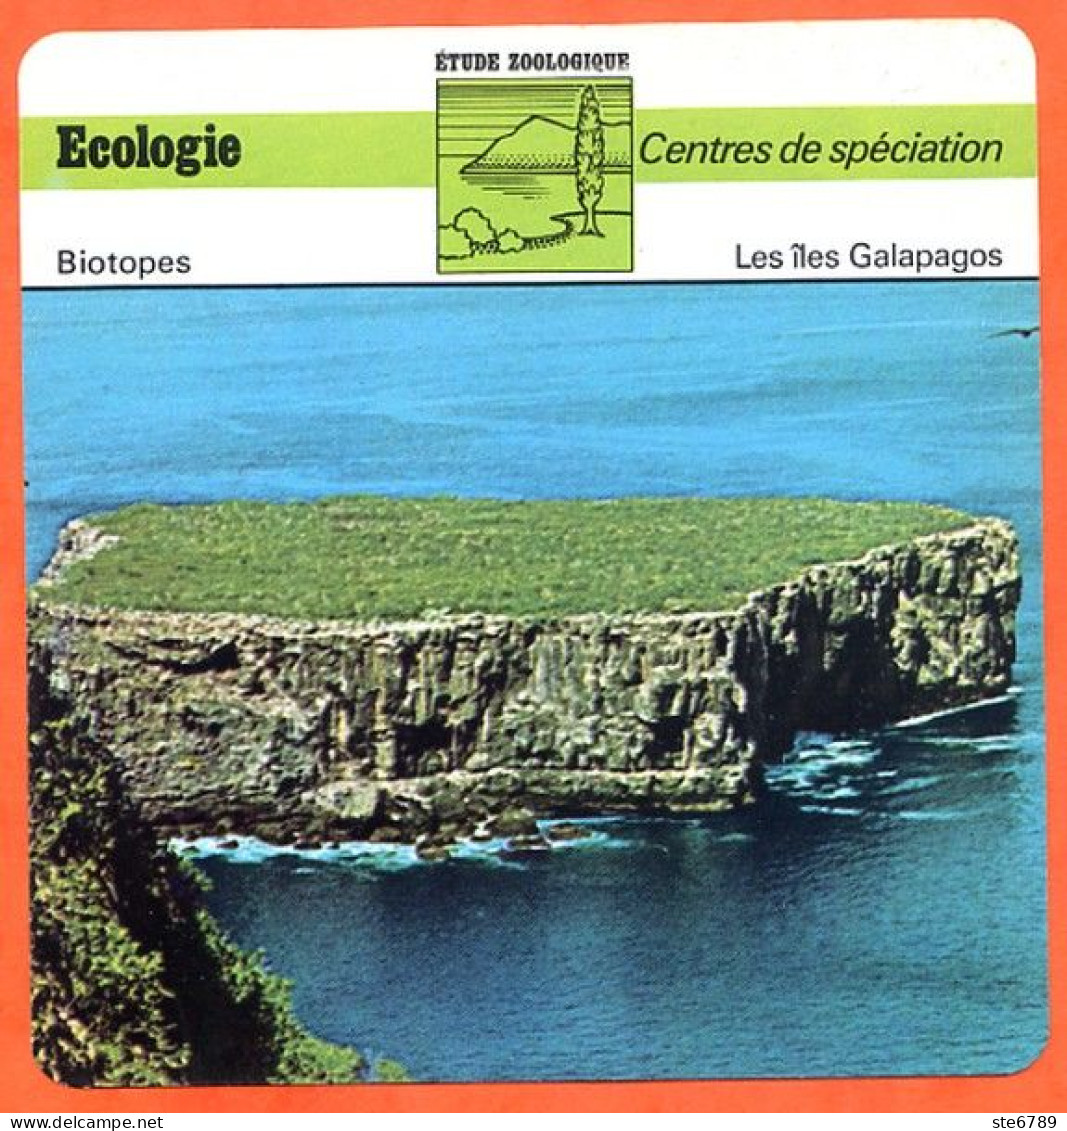 Les Iles Galapagos  Illustration Vue Centres De Spéciation  Etude Zoologique Biotopes Fiche Ecologie - Aardrijkskunde